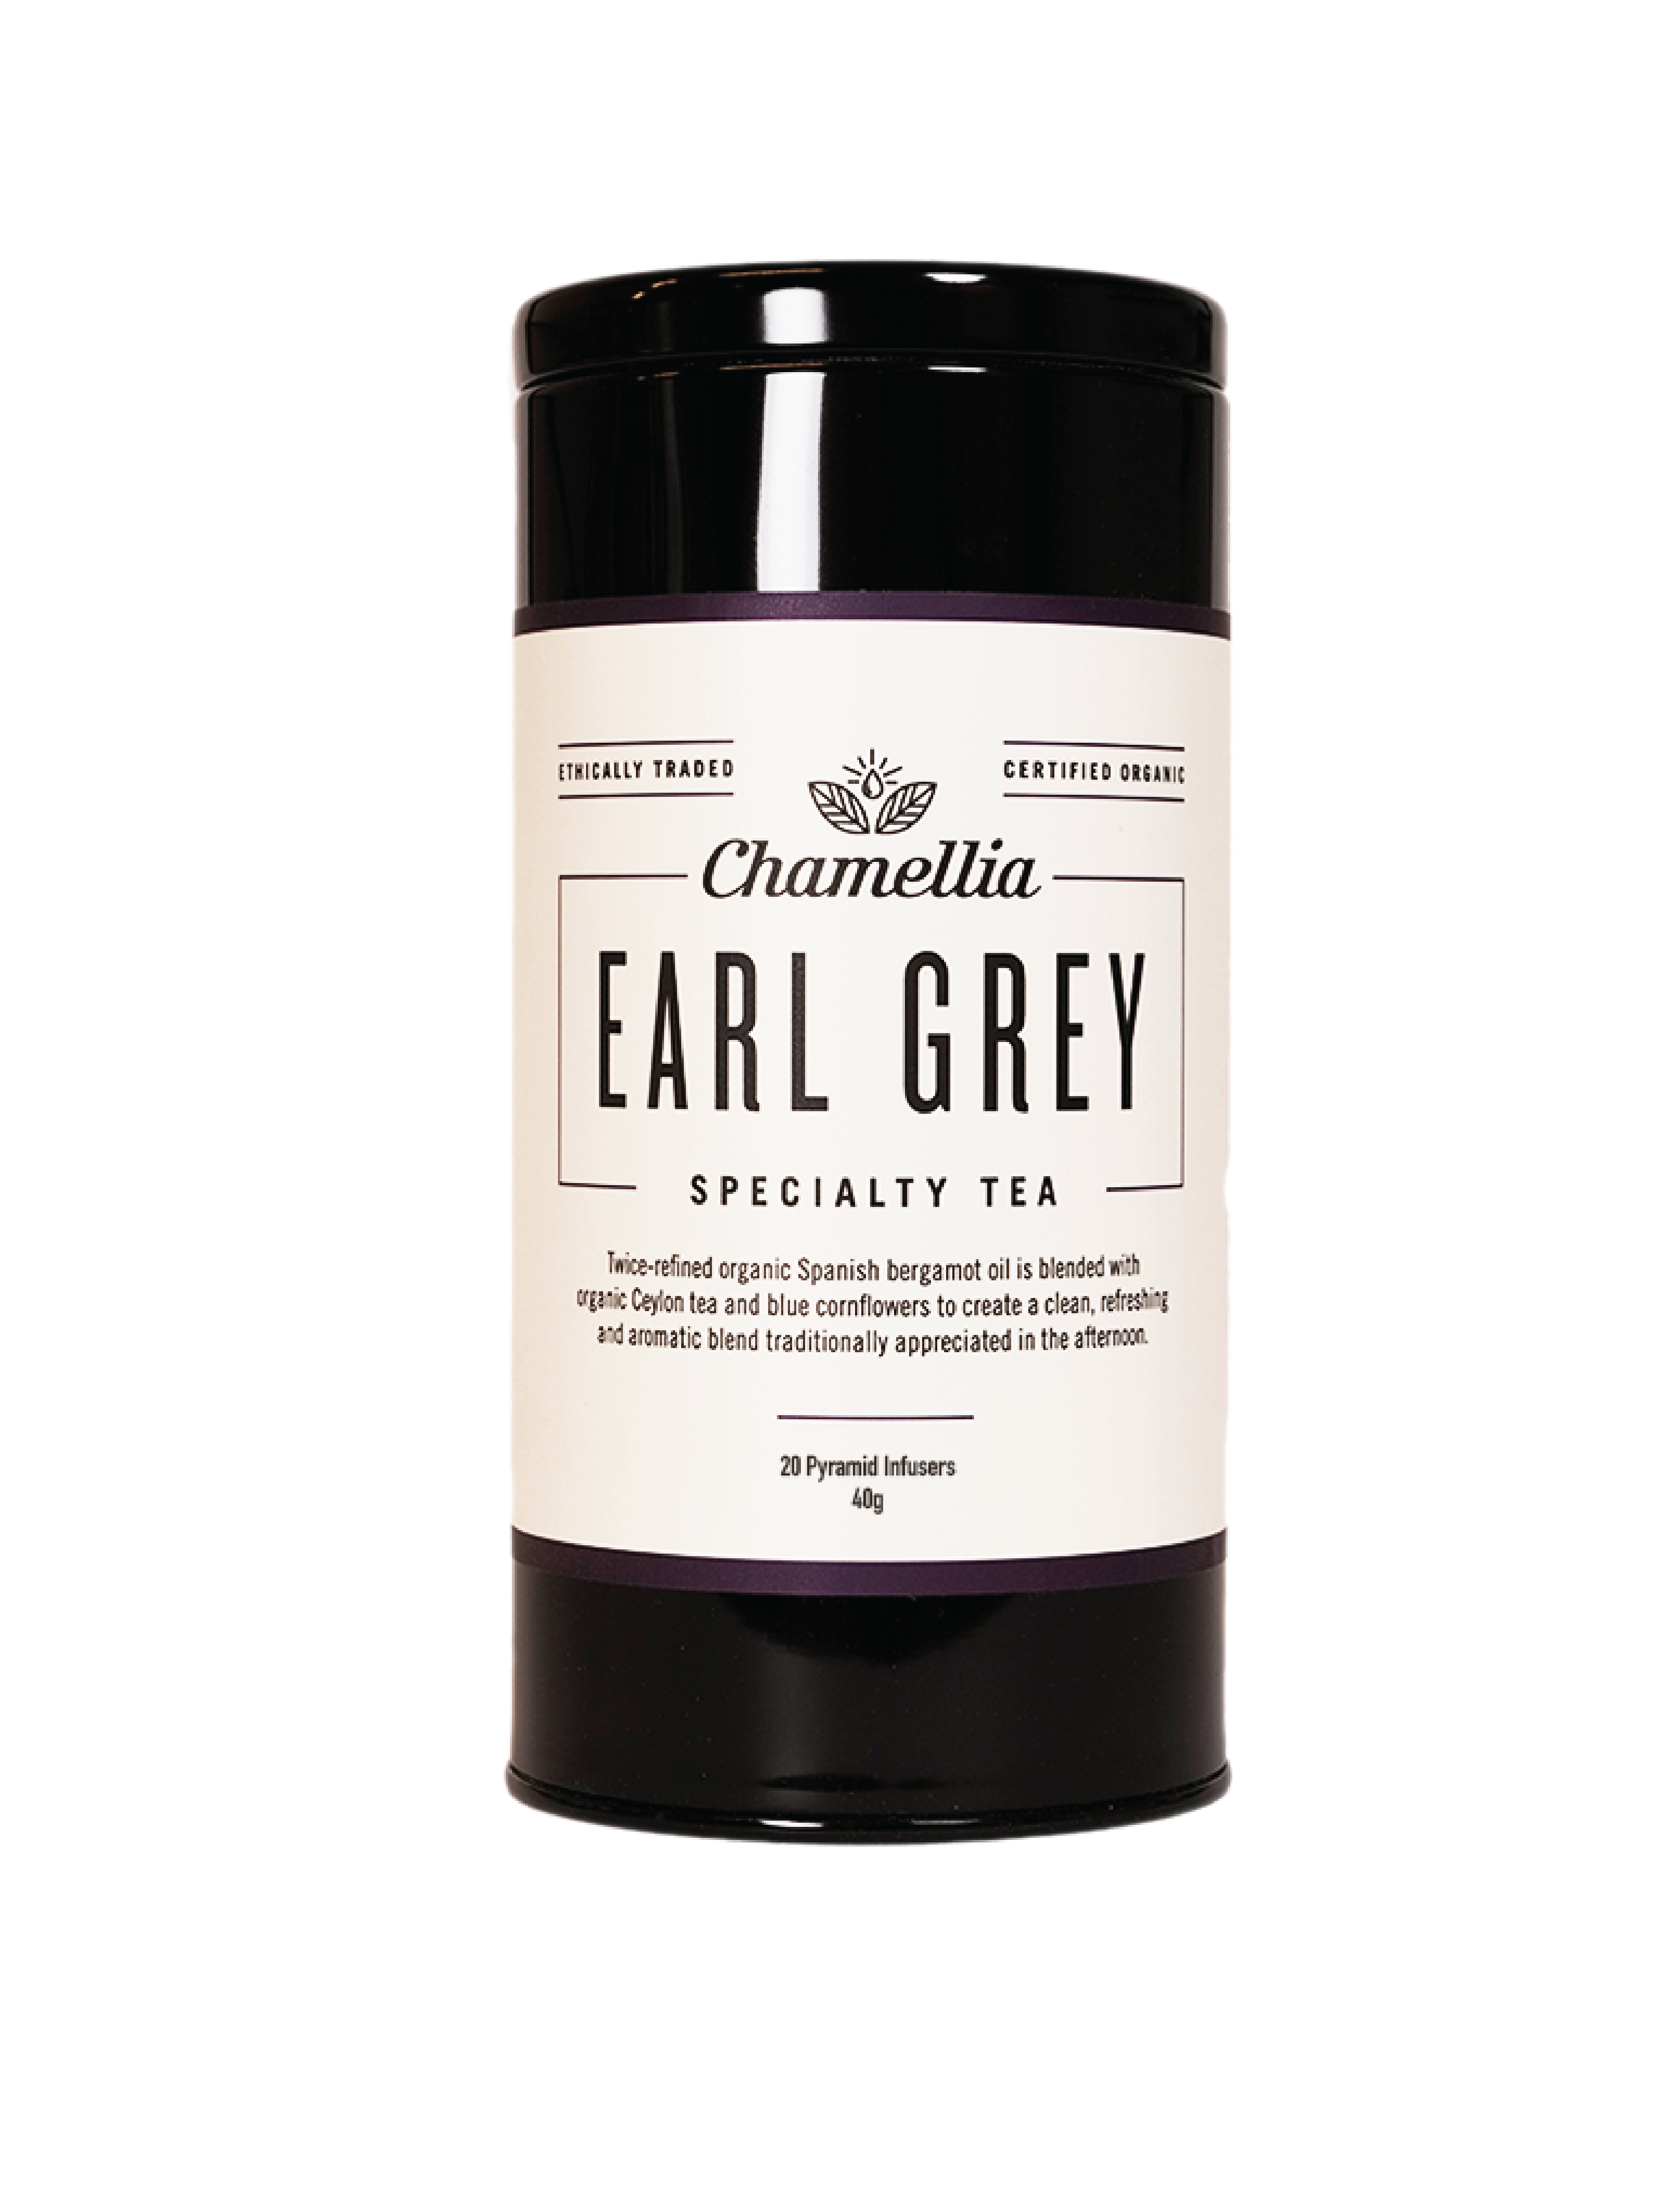 Earl Grey Tea Tin